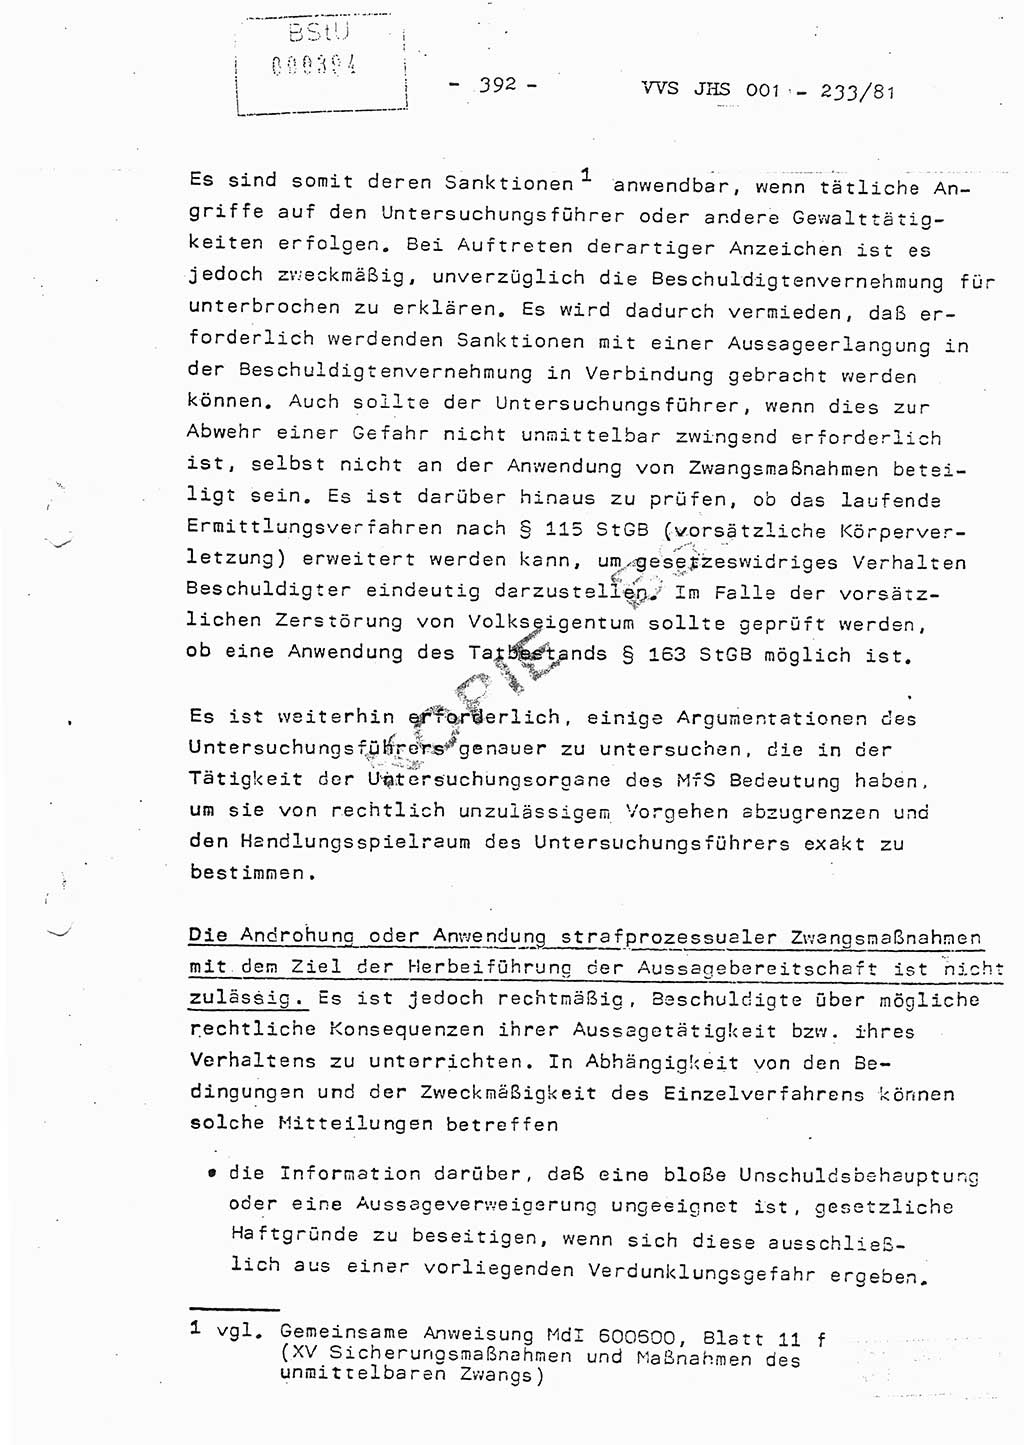 Dissertation Oberstleutnant Horst Zank (JHS), Oberstleutnant Dr. Karl-Heinz Knoblauch (JHS), Oberstleutnant Gustav-Adolf Kowalewski (HA Ⅸ), Oberstleutnant Wolfgang Plötner (HA Ⅸ), Ministerium für Staatssicherheit (MfS) [Deutsche Demokratische Republik (DDR)], Juristische Hochschule (JHS), Vertrauliche Verschlußsache (VVS) o001-233/81, Potsdam 1981, Blatt 392 (Diss. MfS DDR JHS VVS o001-233/81 1981, Bl. 392)